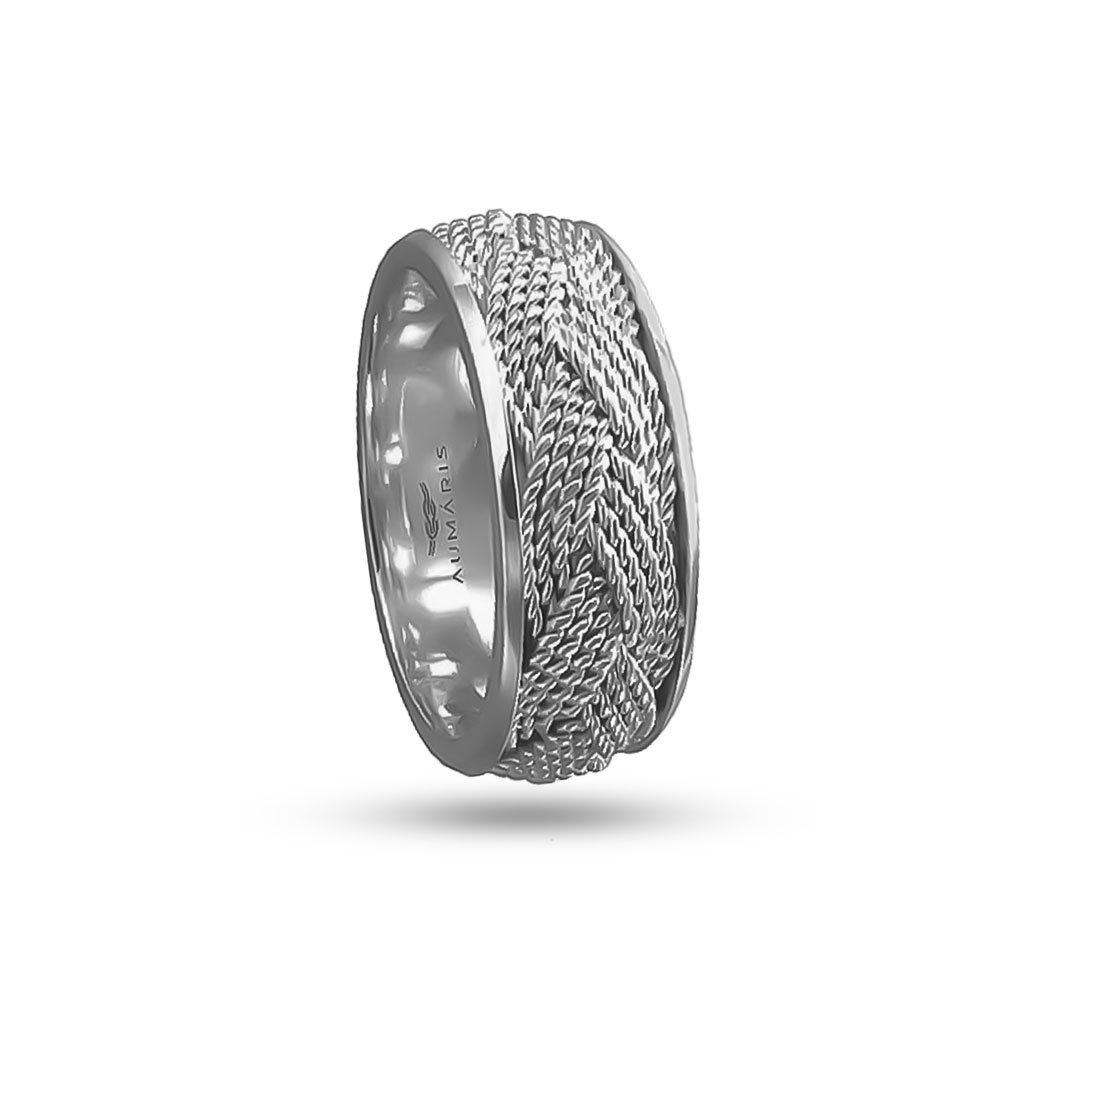 Wide Turks Head Ring Sterling Silver - Ocean Inspired Wedding Rings